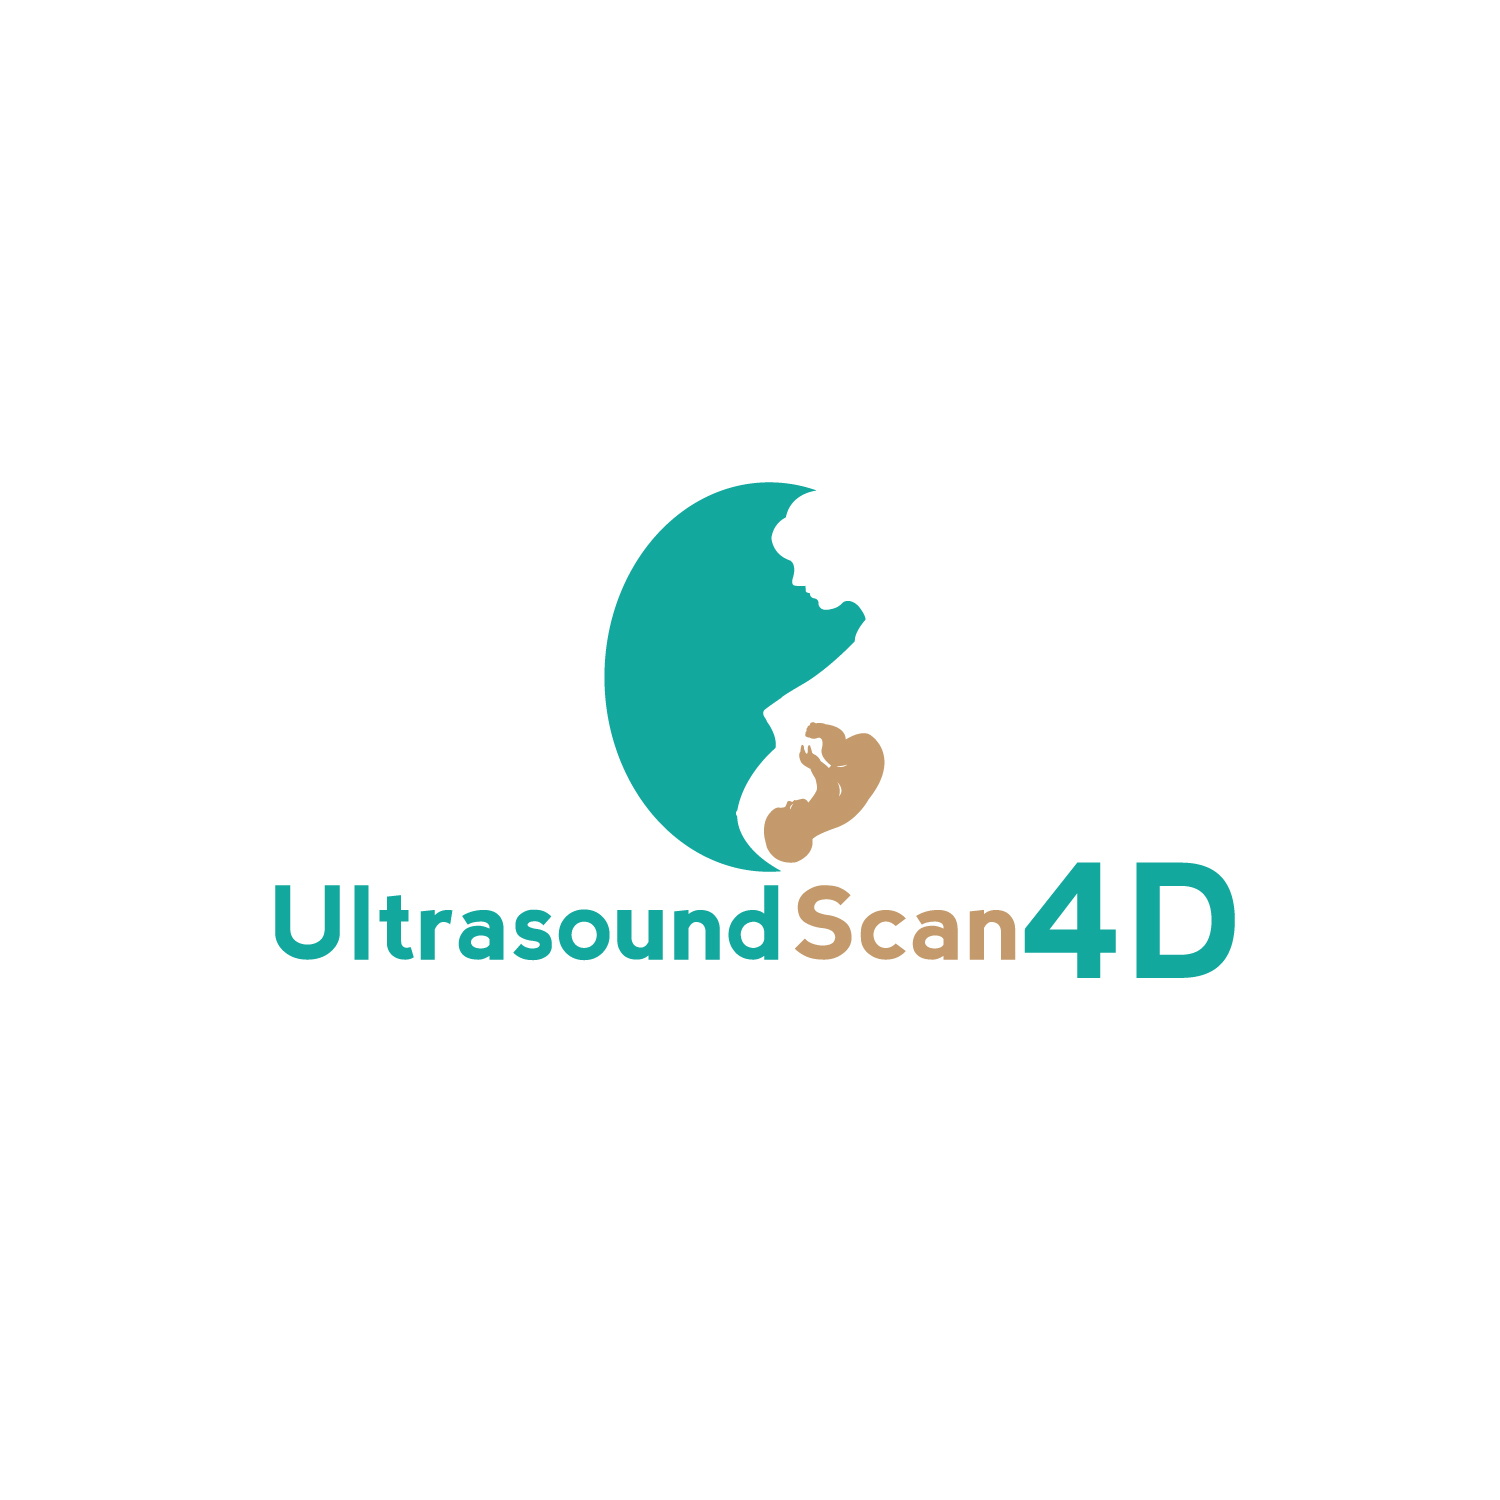 4D Logo - Logo Design Contests Ultrasound Scan 4D Logo Design Design